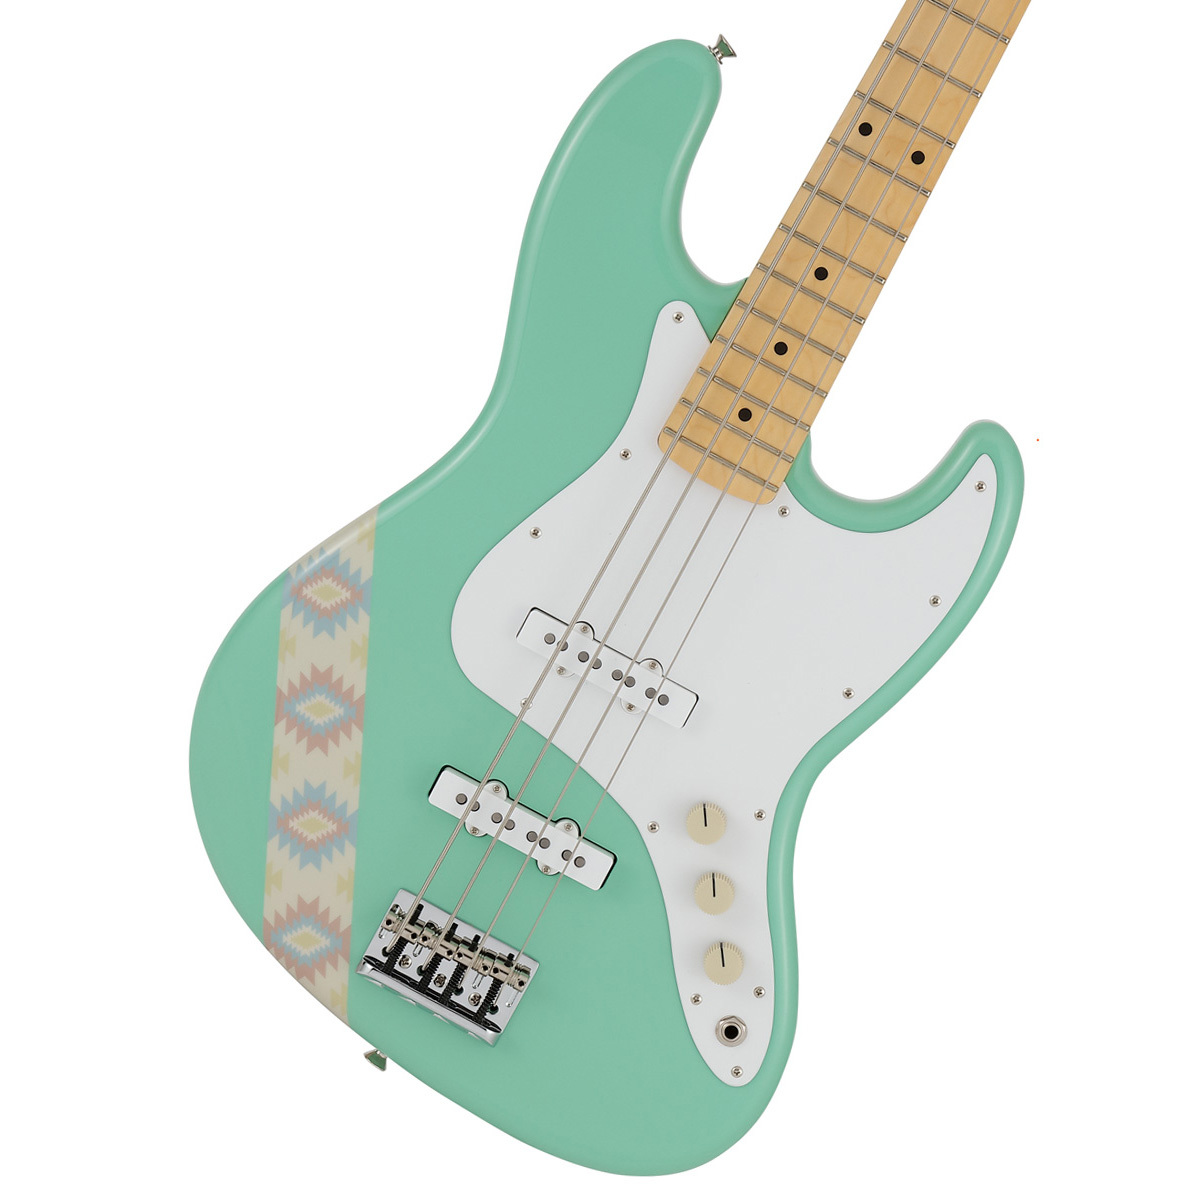 Fender Made In Japan Silent Siren Jazz Bass Surf Green M サイサイ あいにゃんモデル 渋谷店 新品 送料無料 デジマートsale 楽器検索デジマート